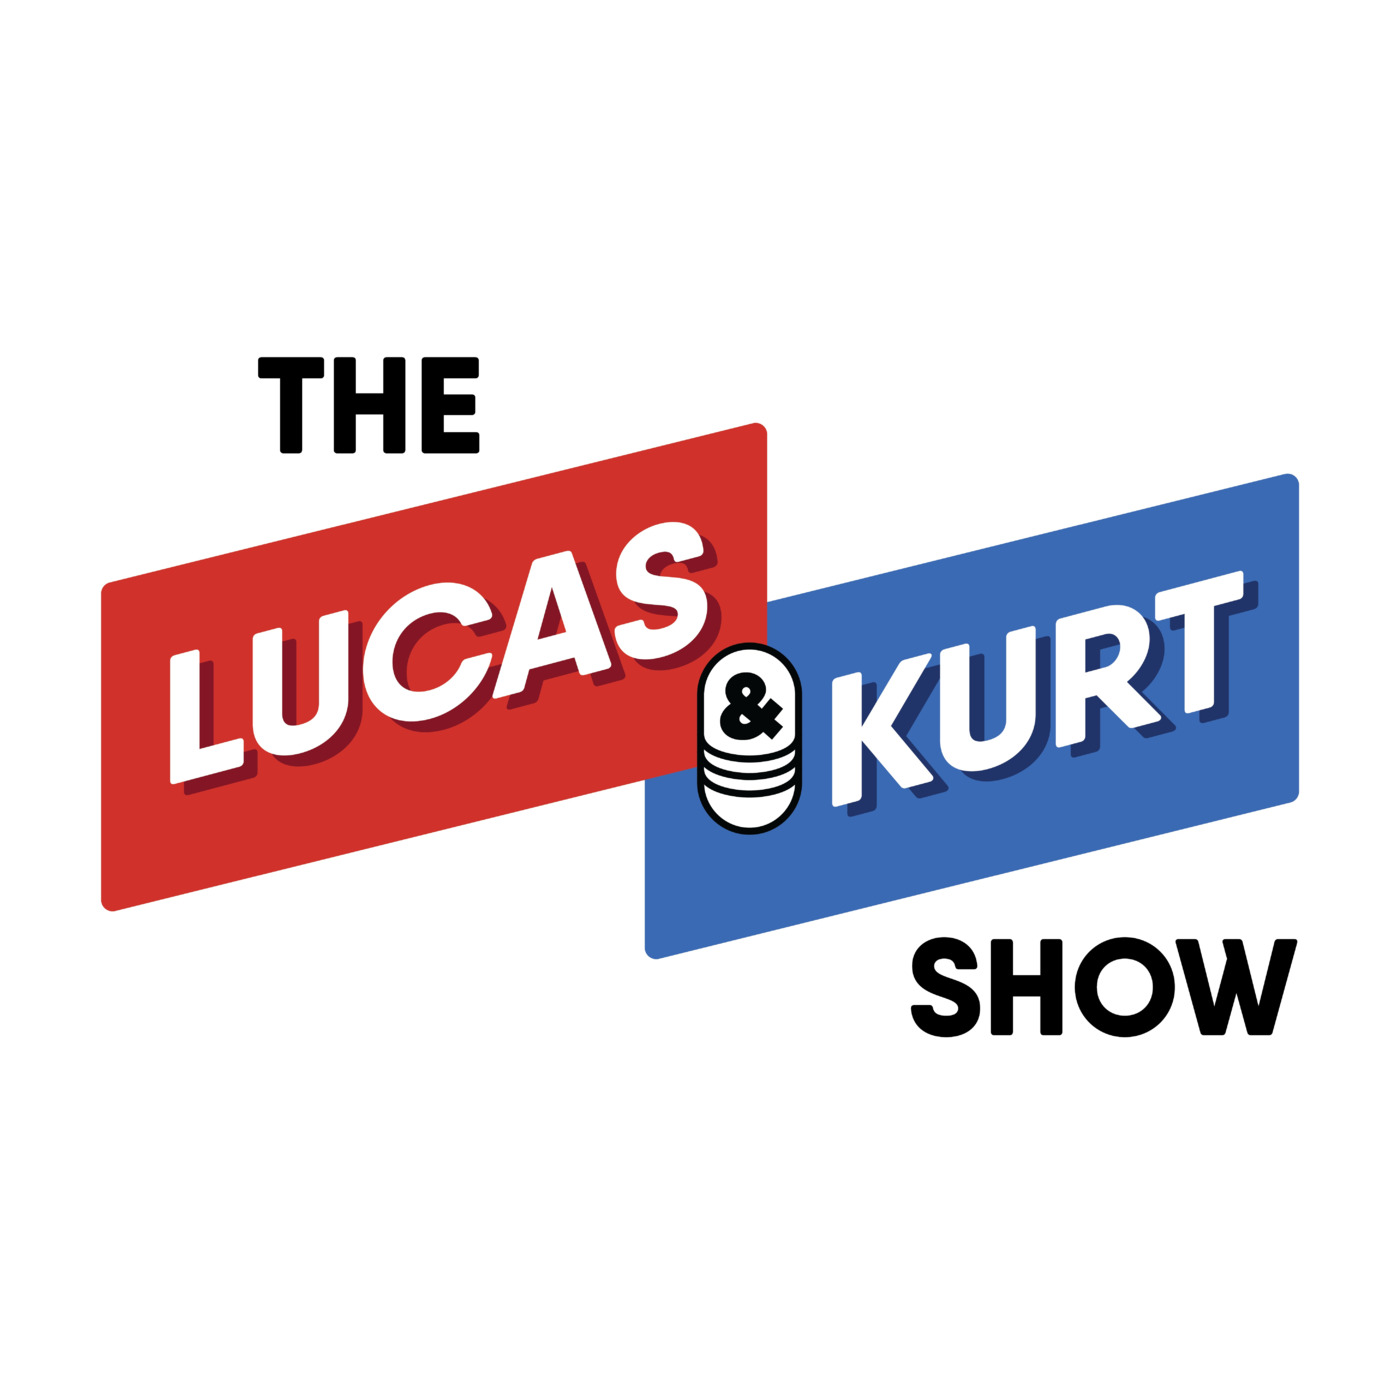 The Lucas & Kurt Show